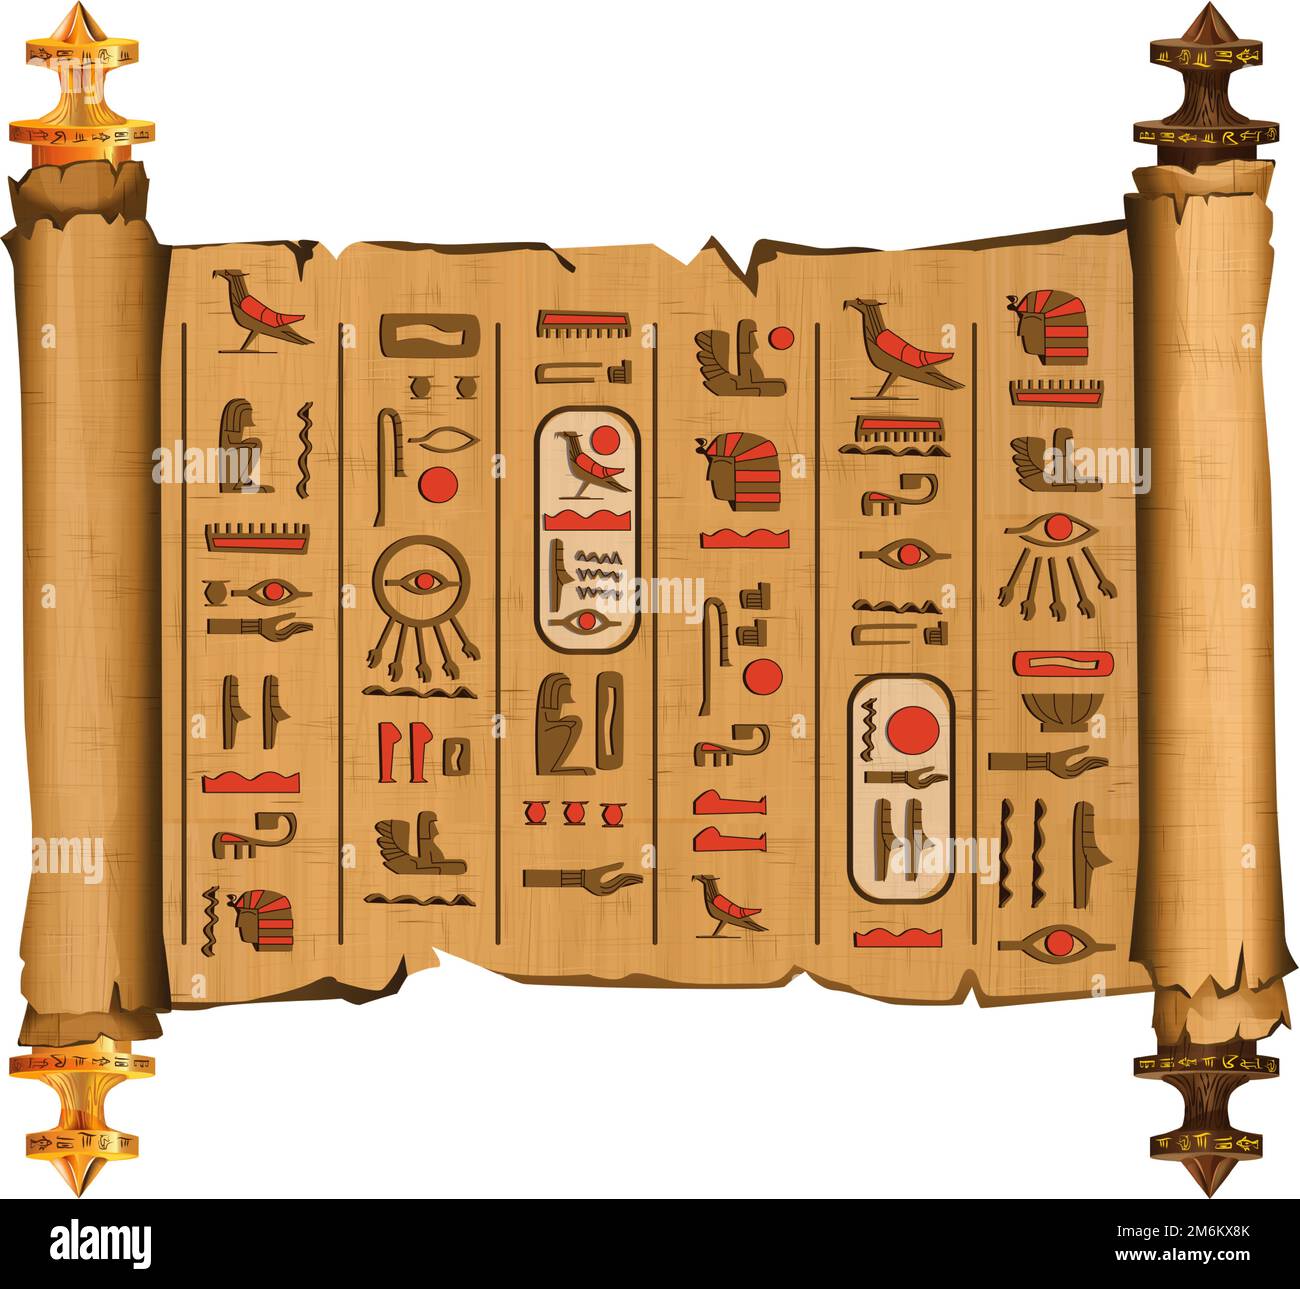 Alte ägyptische Papyrus-Schriftrolle mit Holzstäbchen-Cartoon-Vektor. Antikes Papier mit Hieroglyphen und ägyptischen Kultursymbolen, antiken Göttern, heiligen Vogel, isoliertes Manuskript auf weißem Hintergrund Stock Vektor